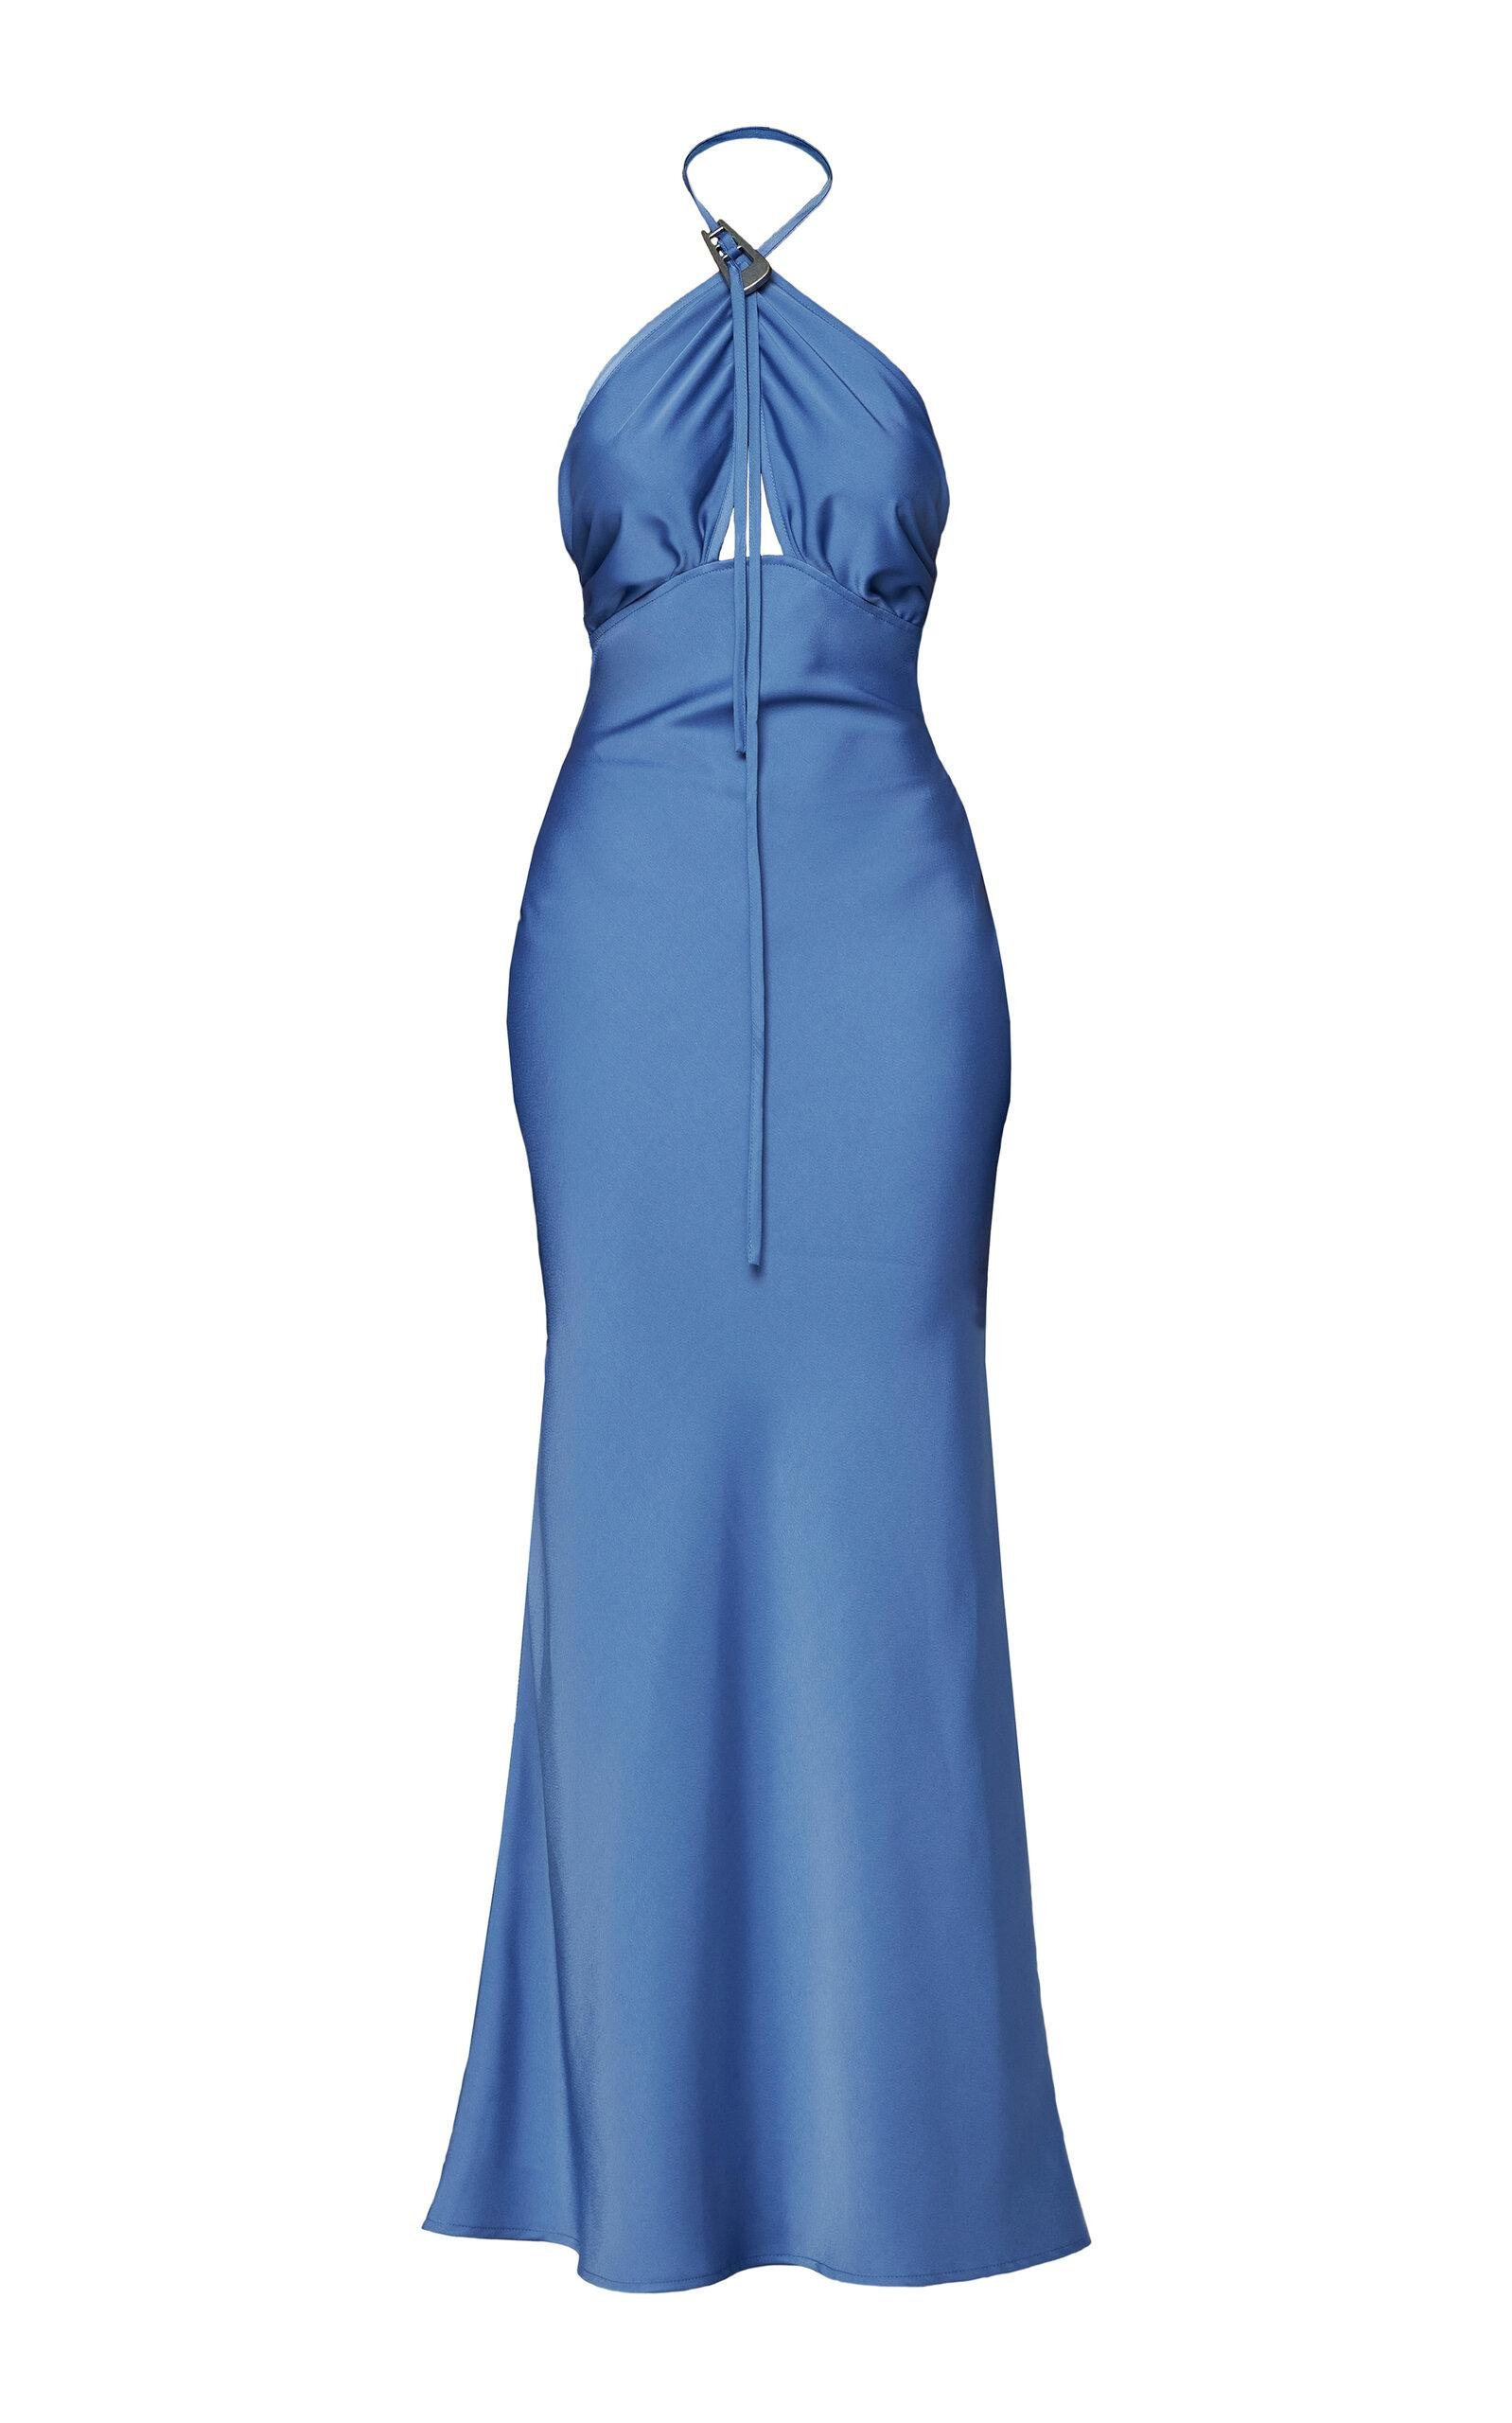 Wynn Hamlyn - Buckle-Detailed Halter Gown - Blue - AU 10 - Moda Operandi by WYNN HAMLYN